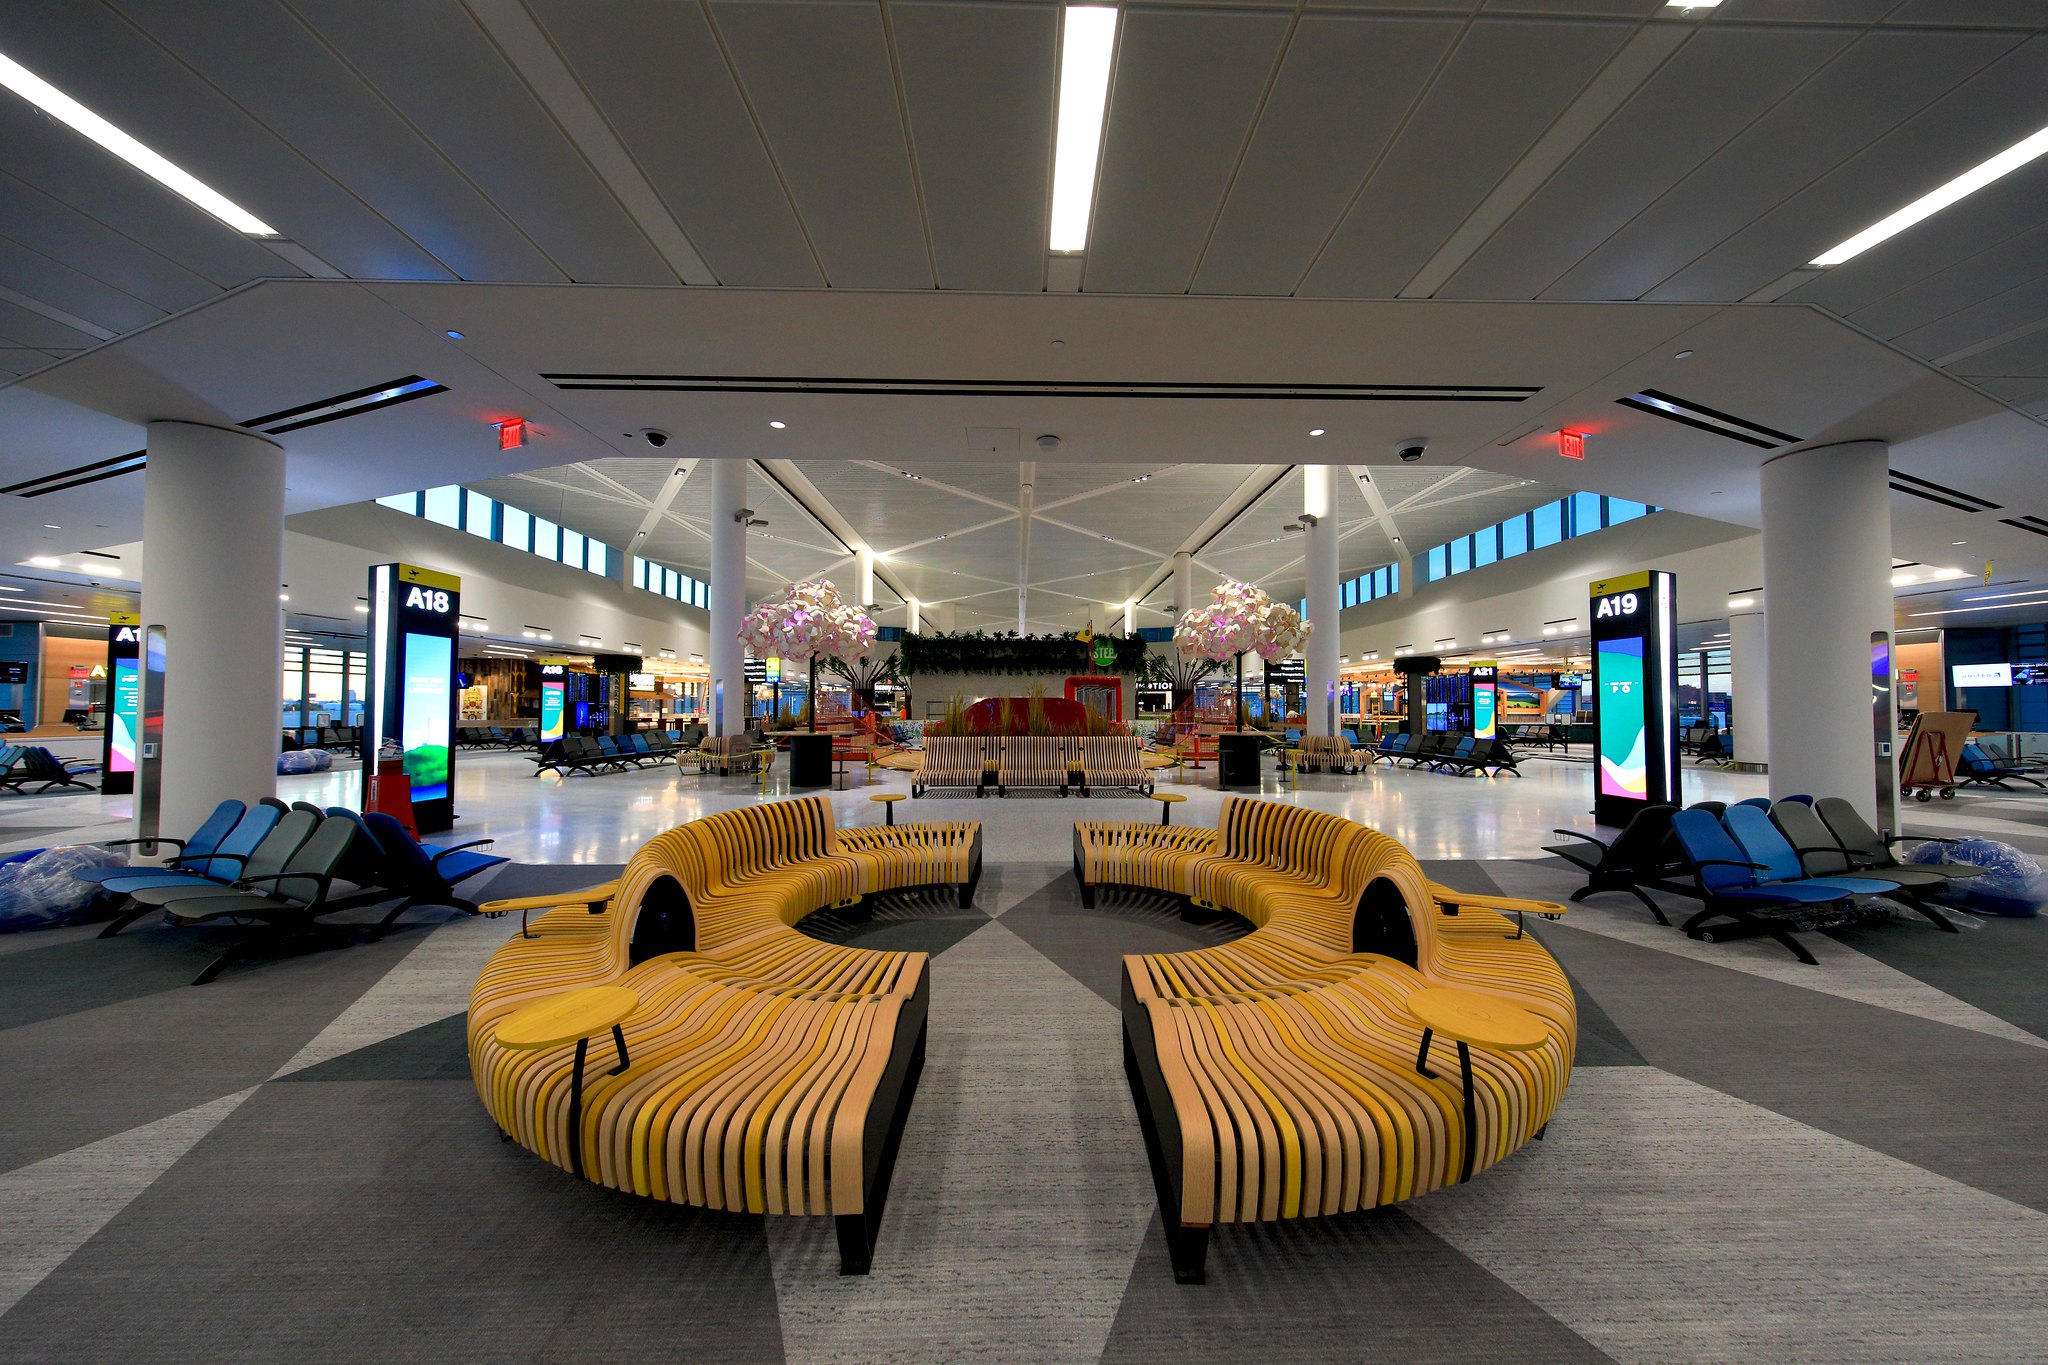 skytrax reconoce la terminal a del aeropuerto de newark como la mejor nueva terminal del mundo